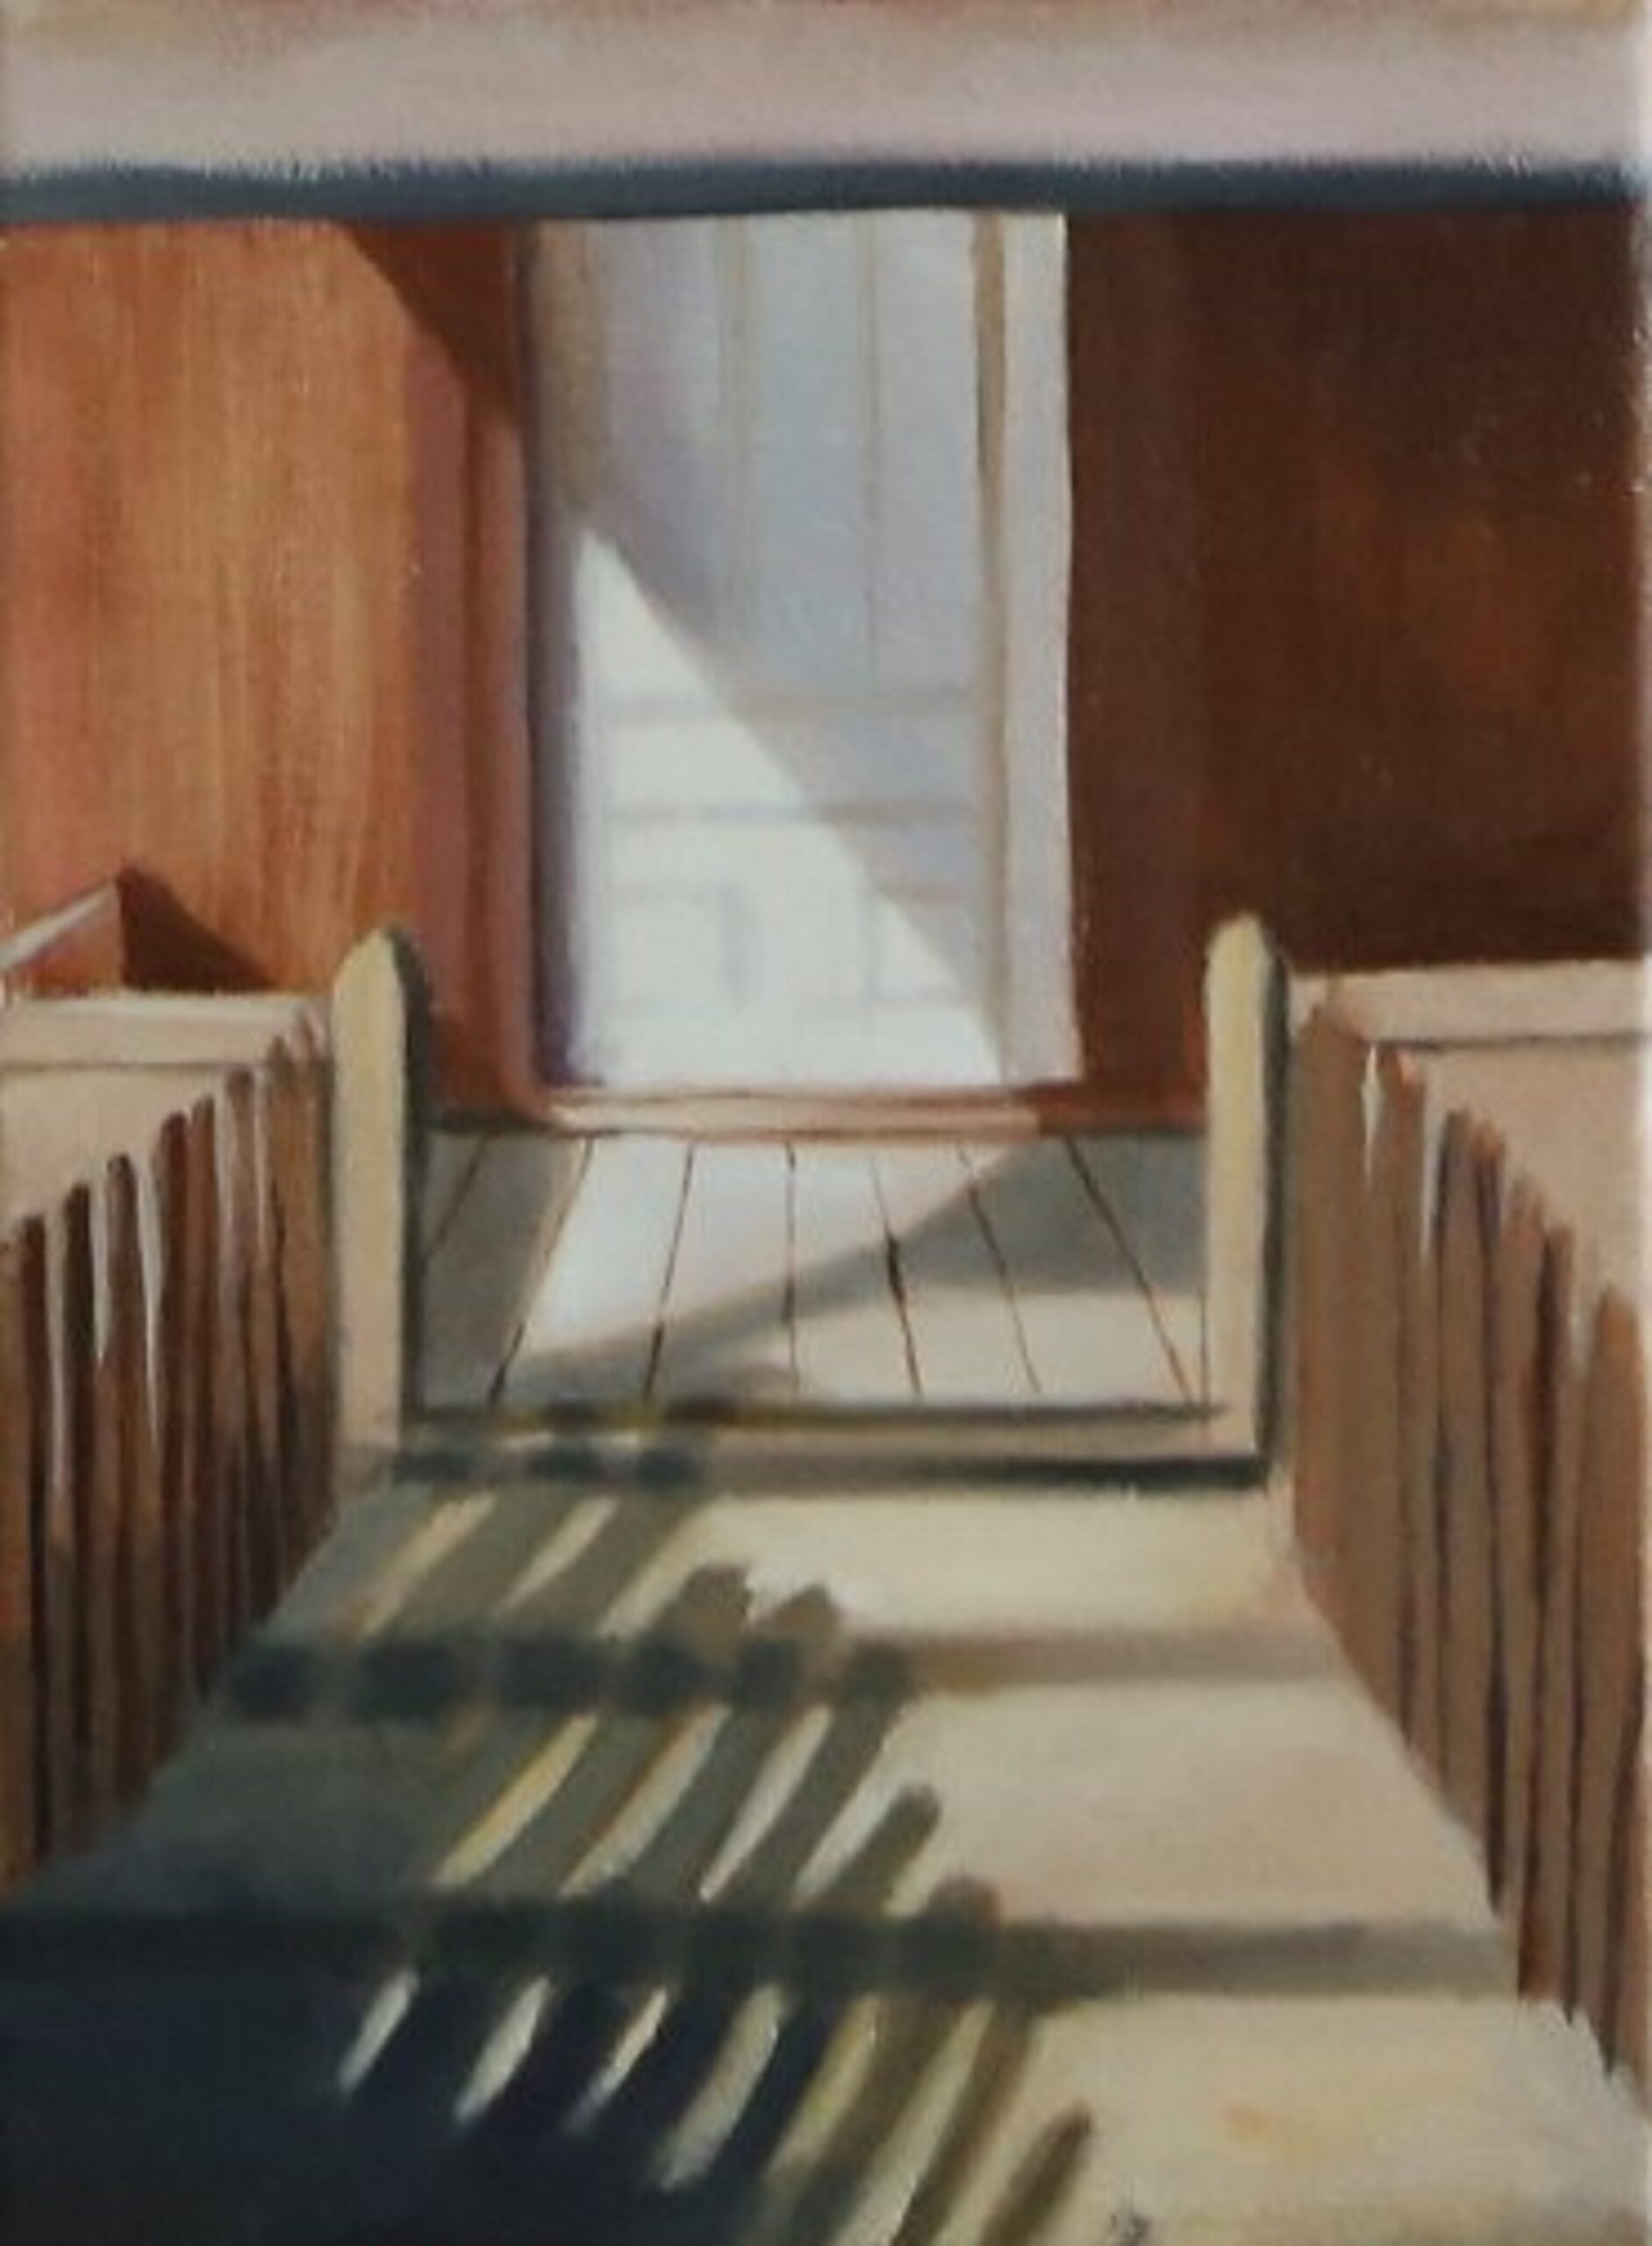 Obraz przedstawia fragment przestrzeni ze schodami i drzwiami z zachowaniem symetrycznej kompozycji.